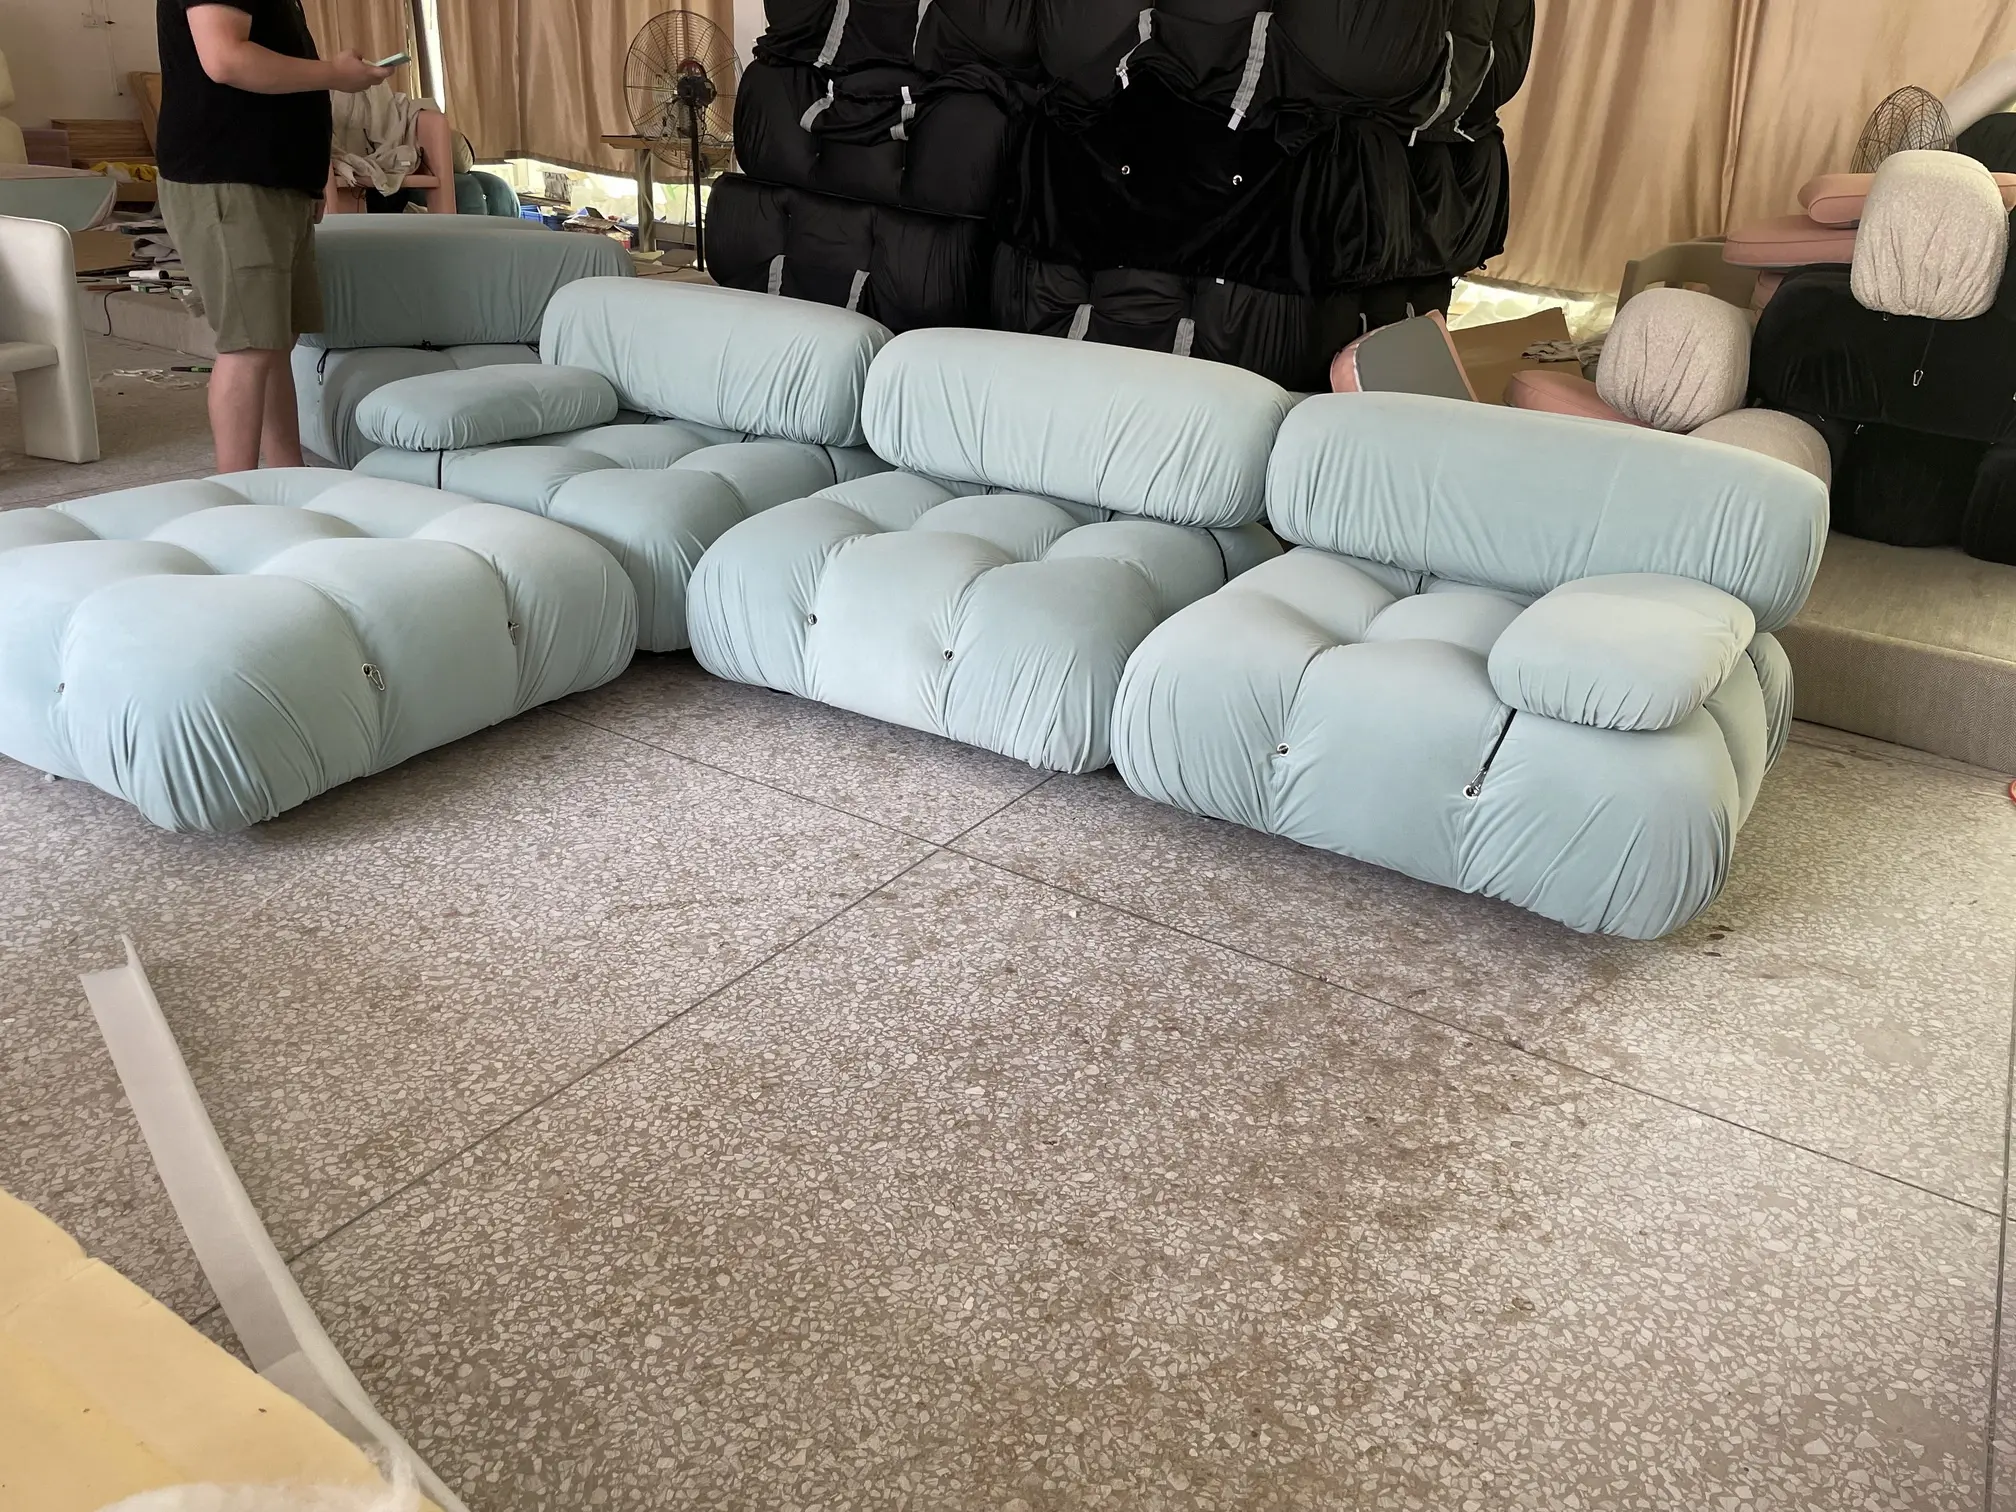 Salon moderne Mario canapé loisirs canapé modulaire confortable et durable Boucle canapé pour la maison ensemble de meubles canapé sectionnel